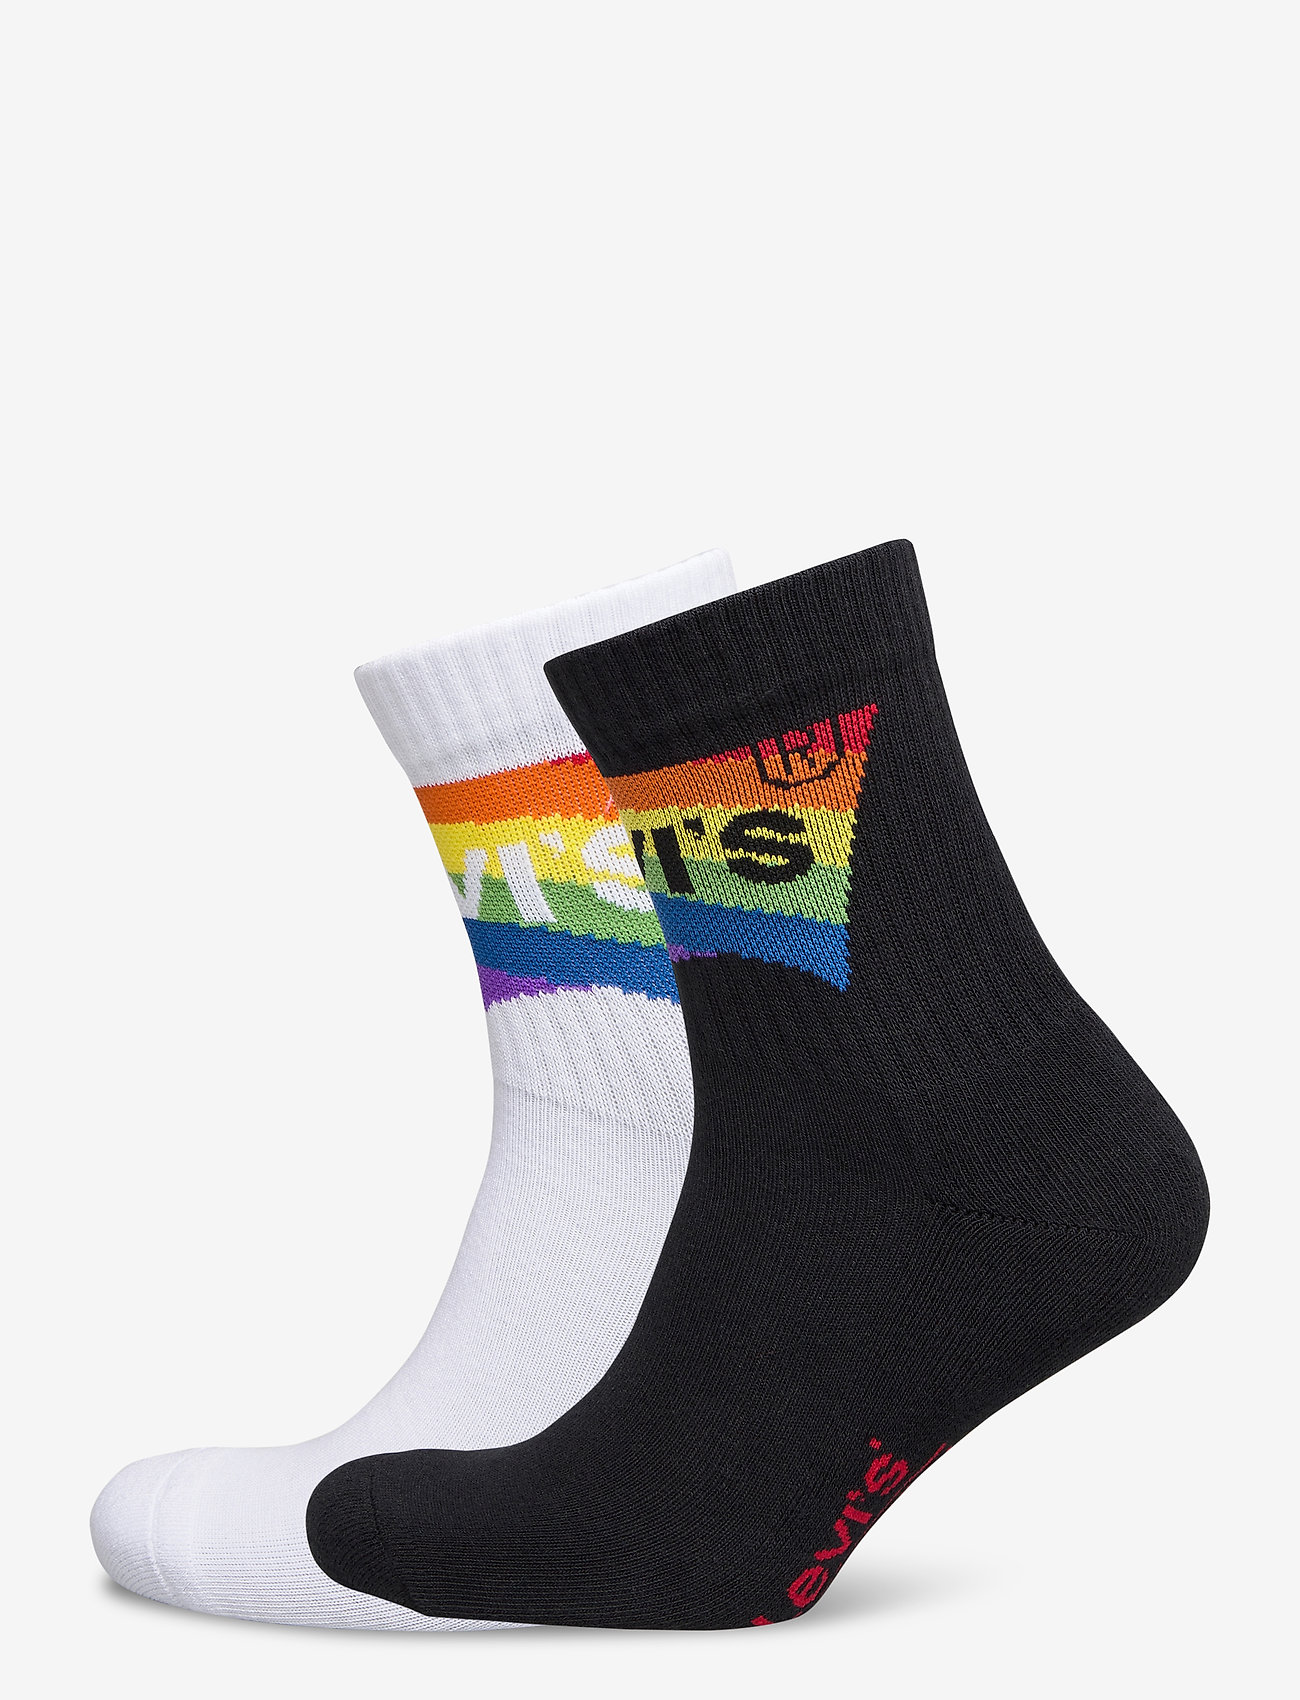 levi's pride socks